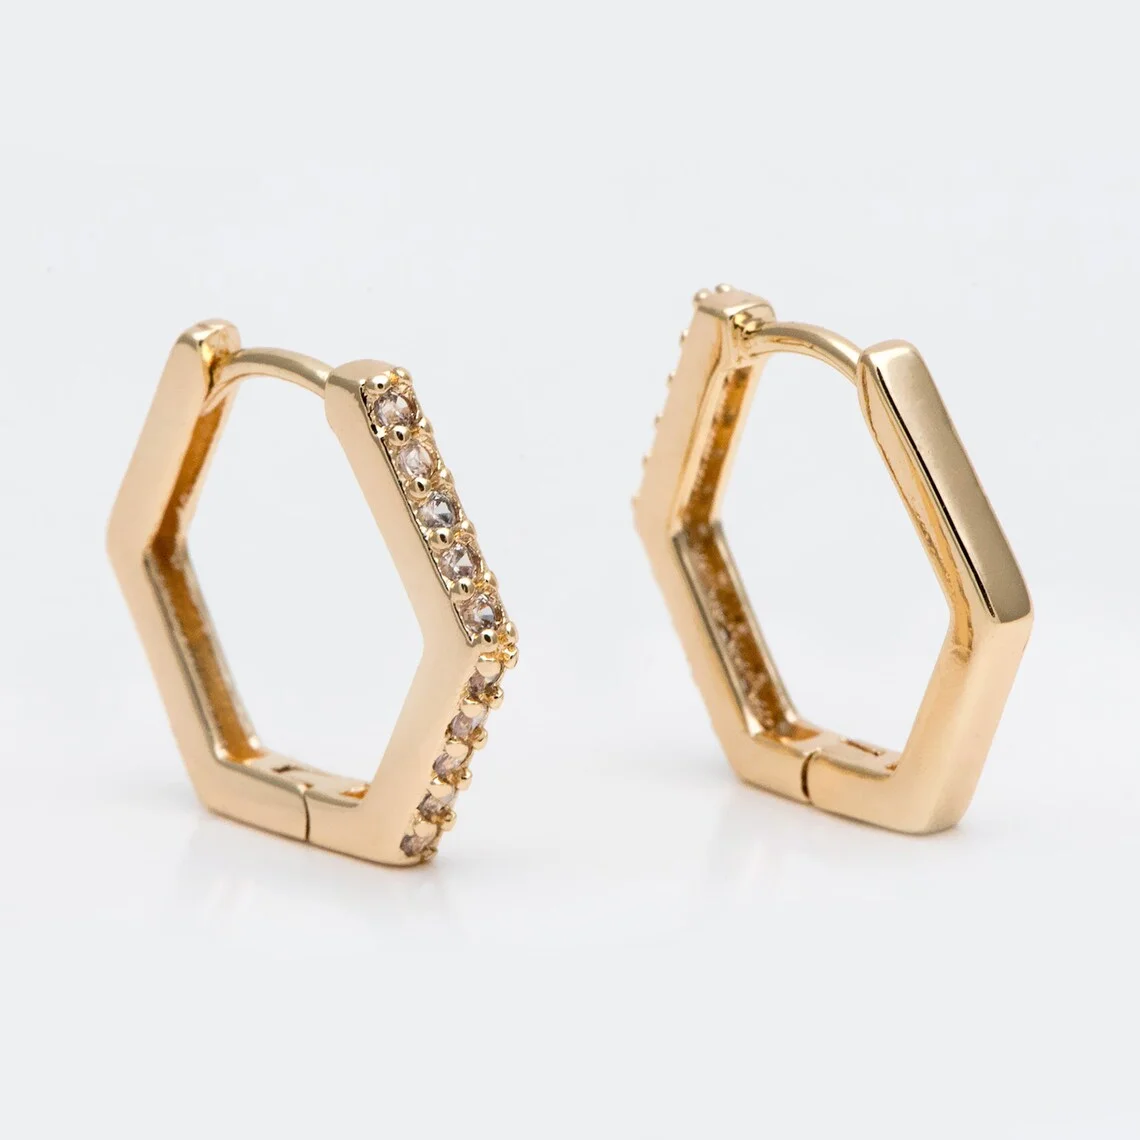 

4pcs 18K Gold Hexagon Huggie Earrings, Cubic Zirconia Hoop Earrings, CZ pave Gold Huggies, Geometric Hoop Earrings